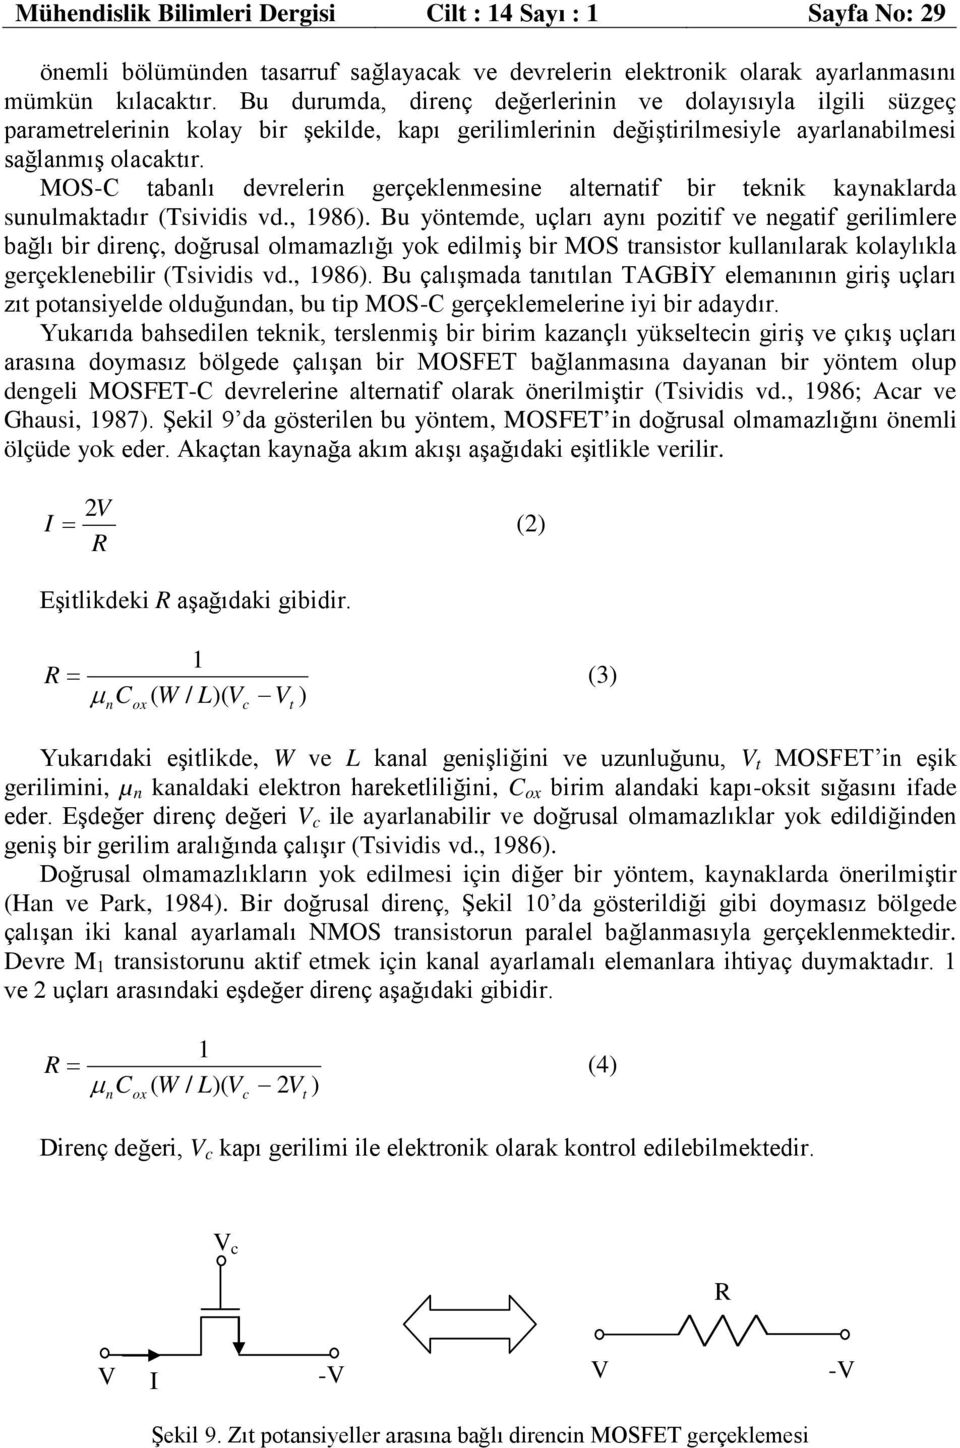 MOS-C tabanlı devrelerin gerçeklenmeine alternatif bir teknik kaynaklarda unulmaktadır (Tividi vd., 98).